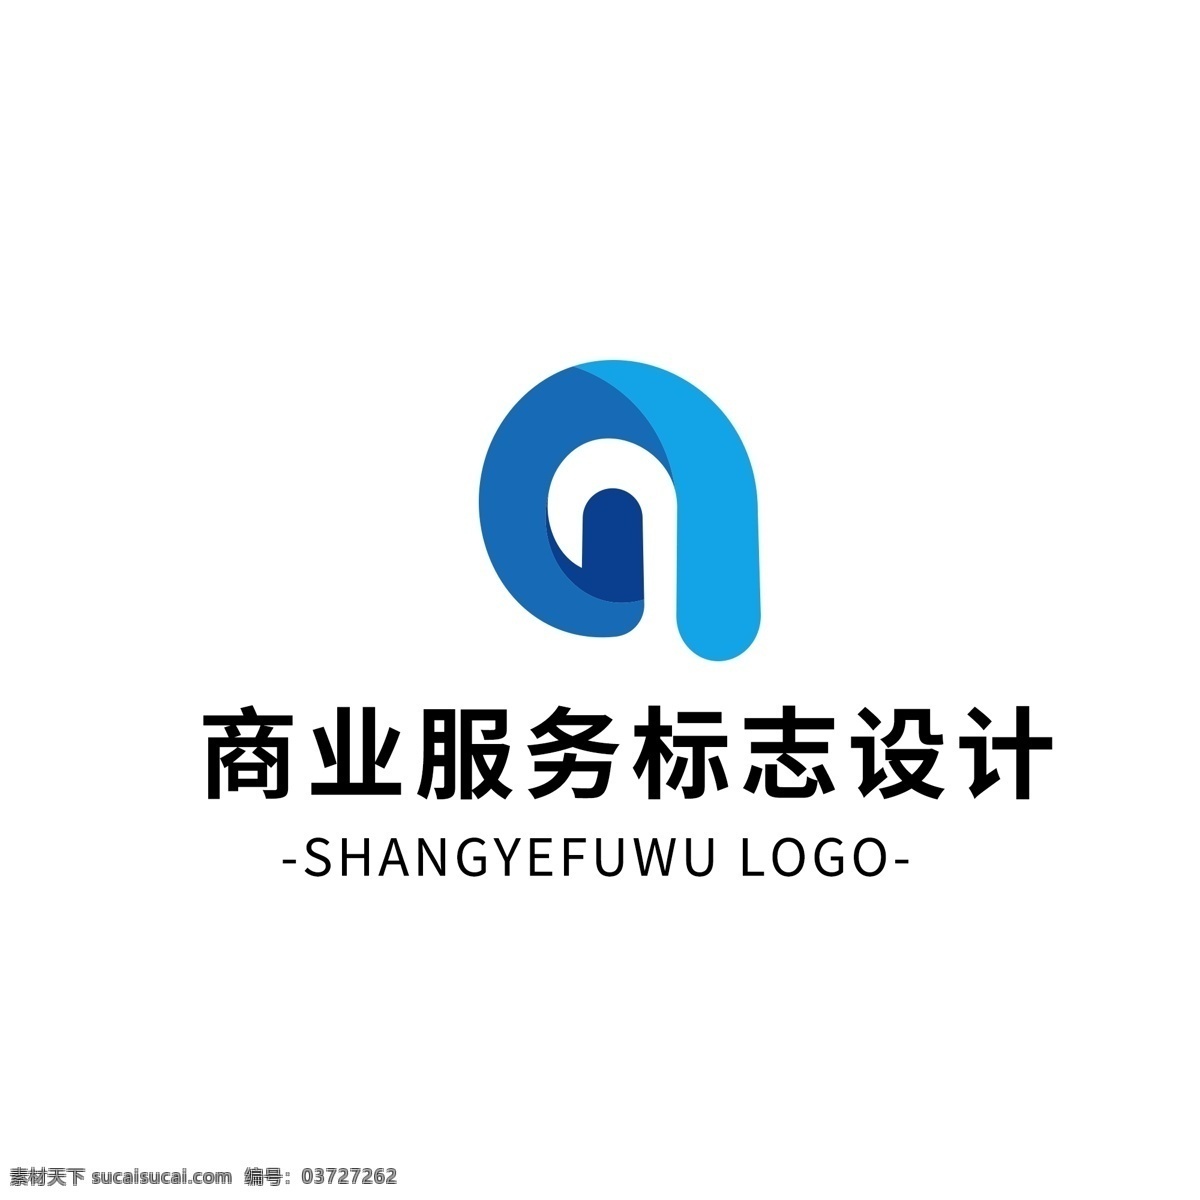 简约 大气 创意 商业服务 logo 标志设计 蓝色 字母 图形 矢量